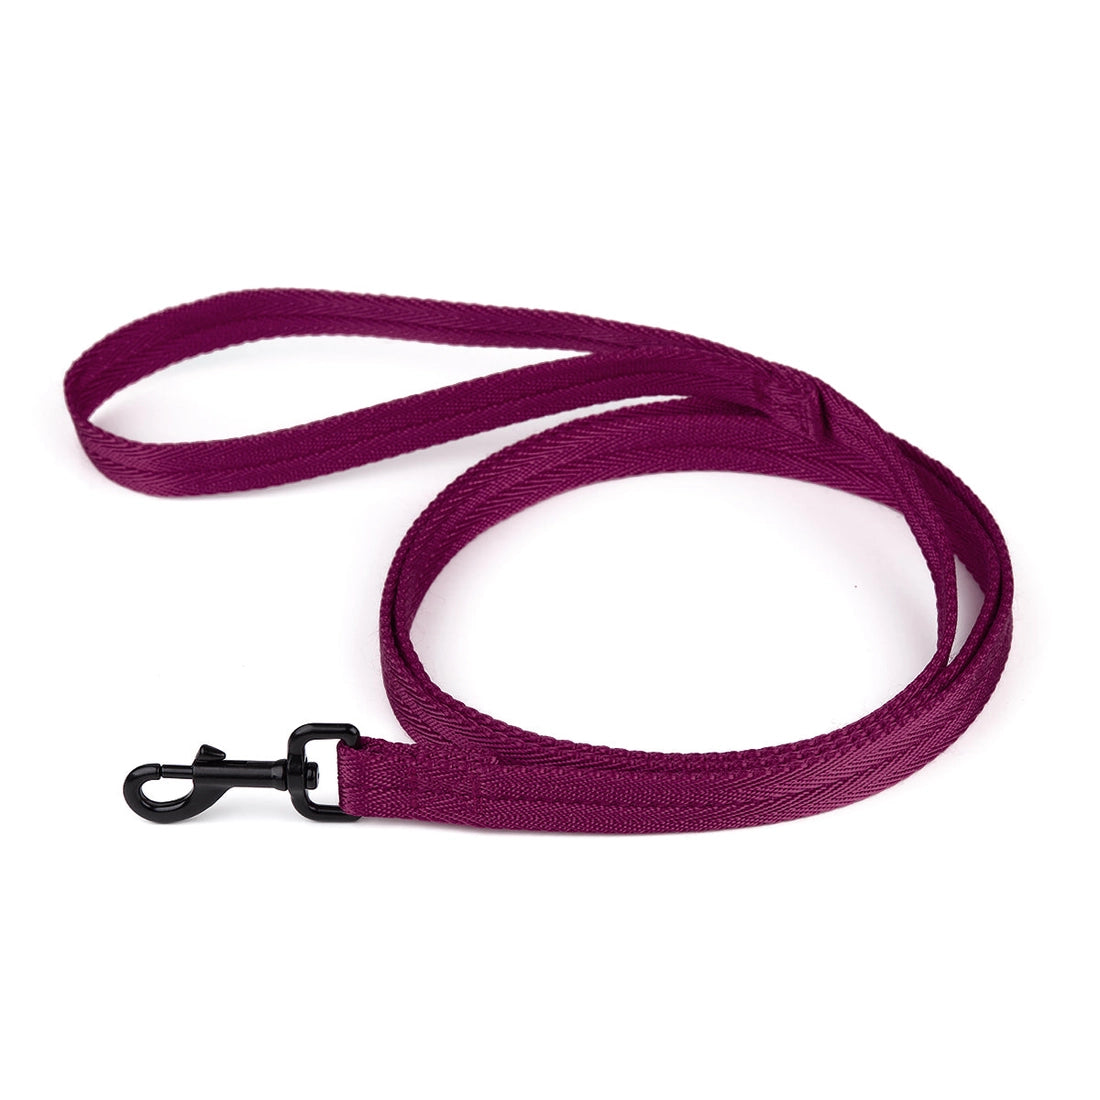 berry wine flat nylon dog leash with black hardware